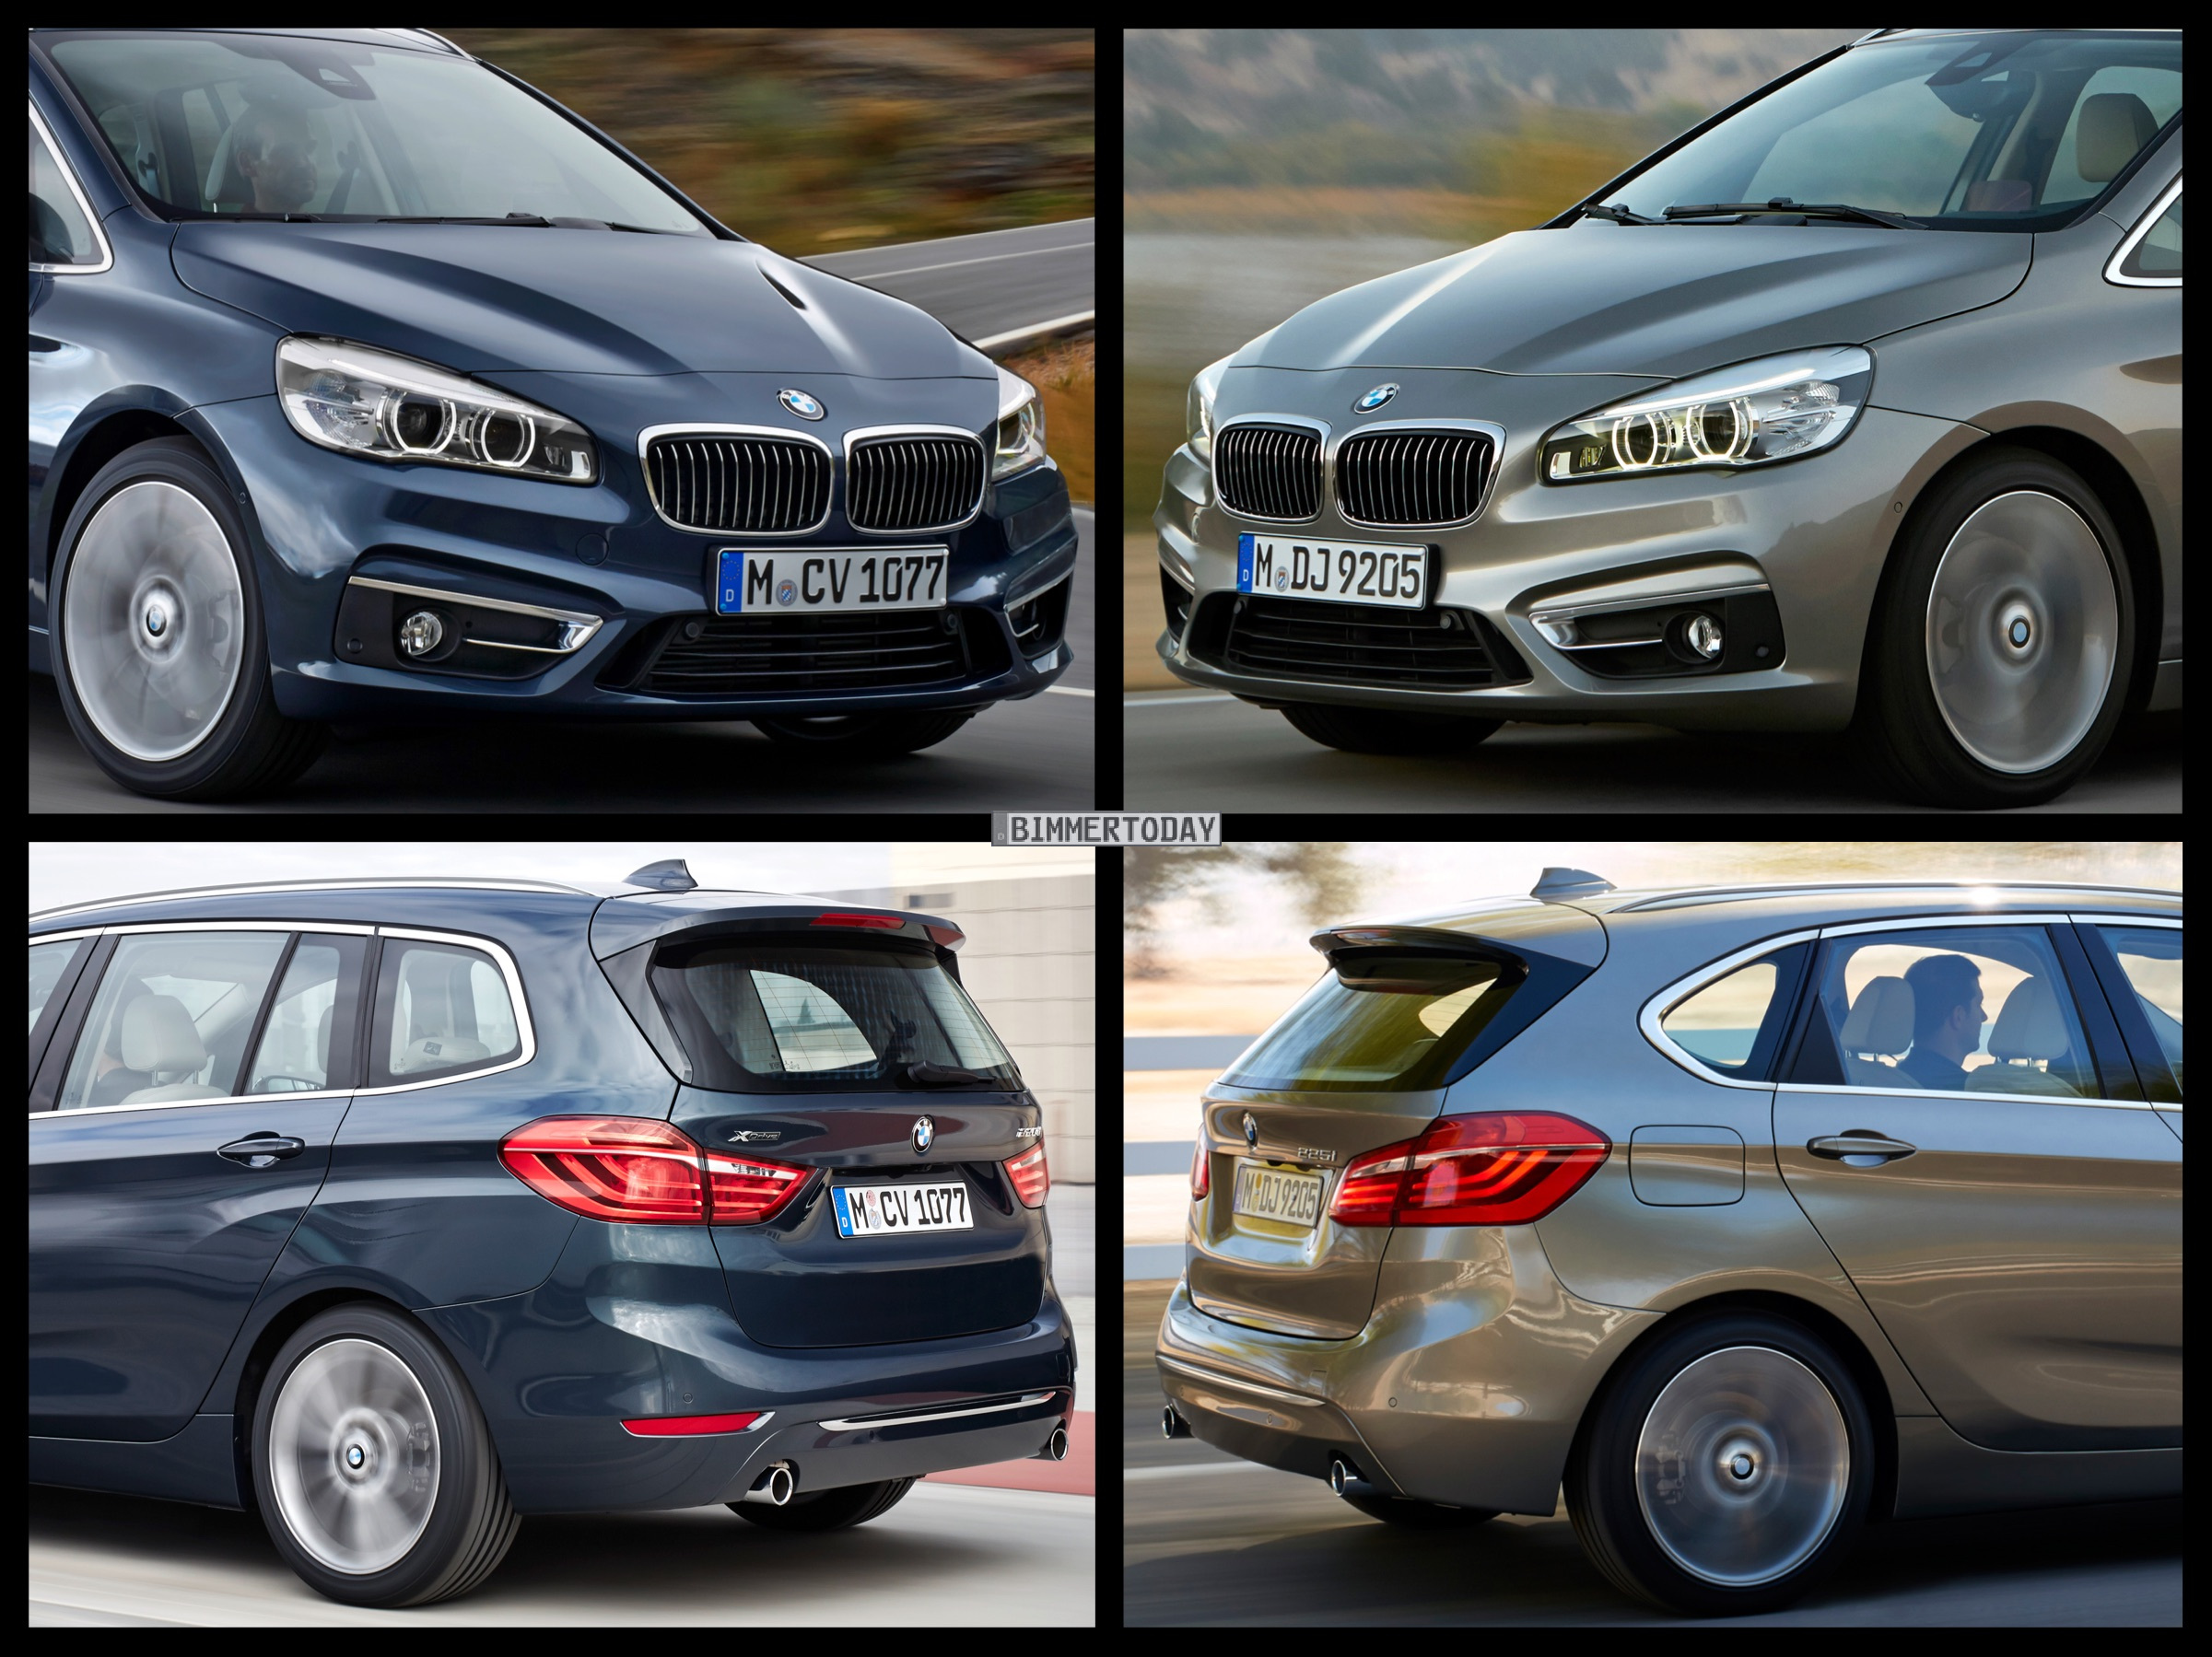 https://cdn.bimmertoday.de/wp-content/uploads/2015/02/BMW-2er-Gran-Tourer-vs-BMW-2er-Active-Tourer-Bild-Vergleich-F45-F46-01.jpg